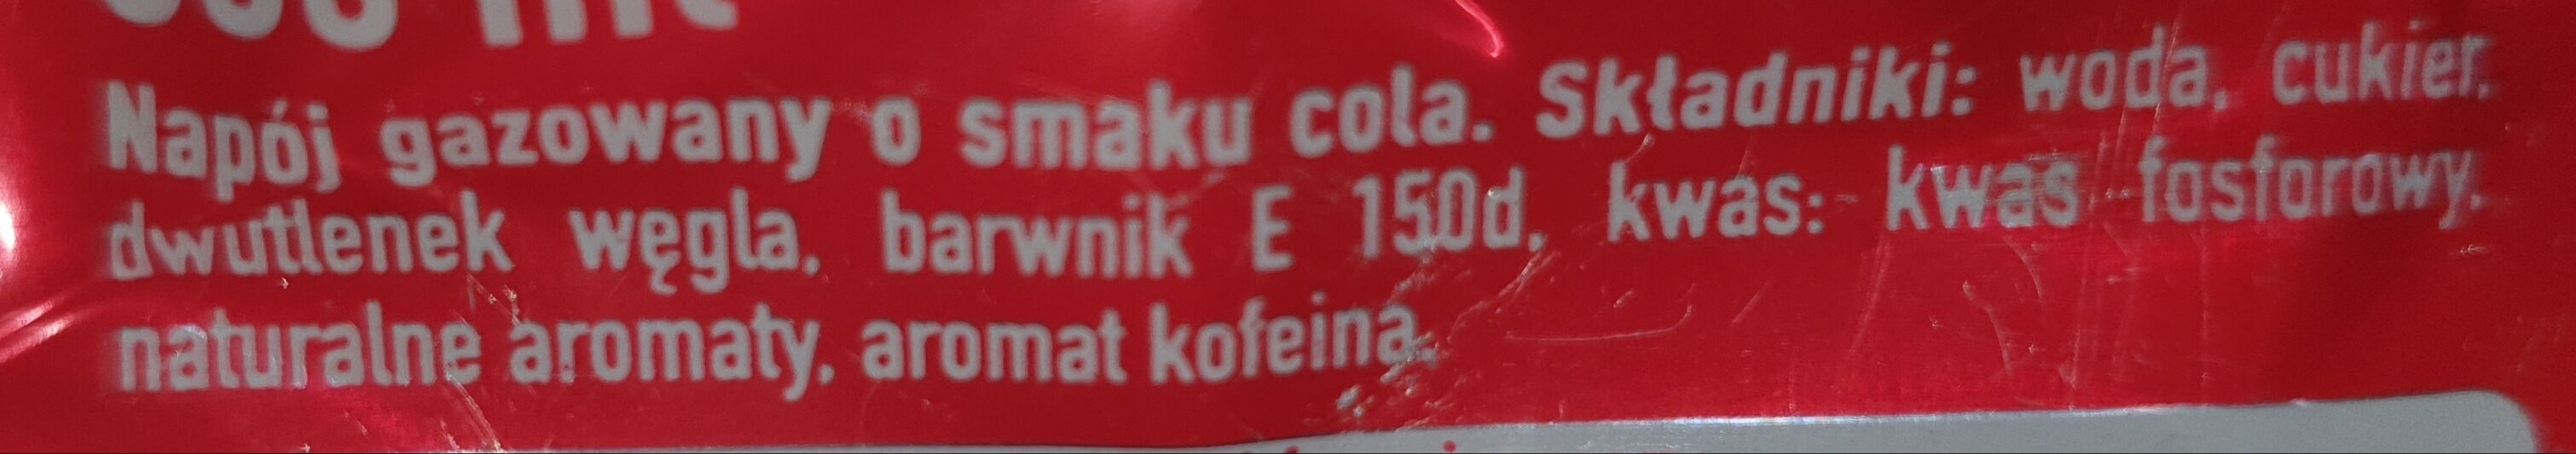 Coca-Cola - napój gazowany o smaku cola - Składniki